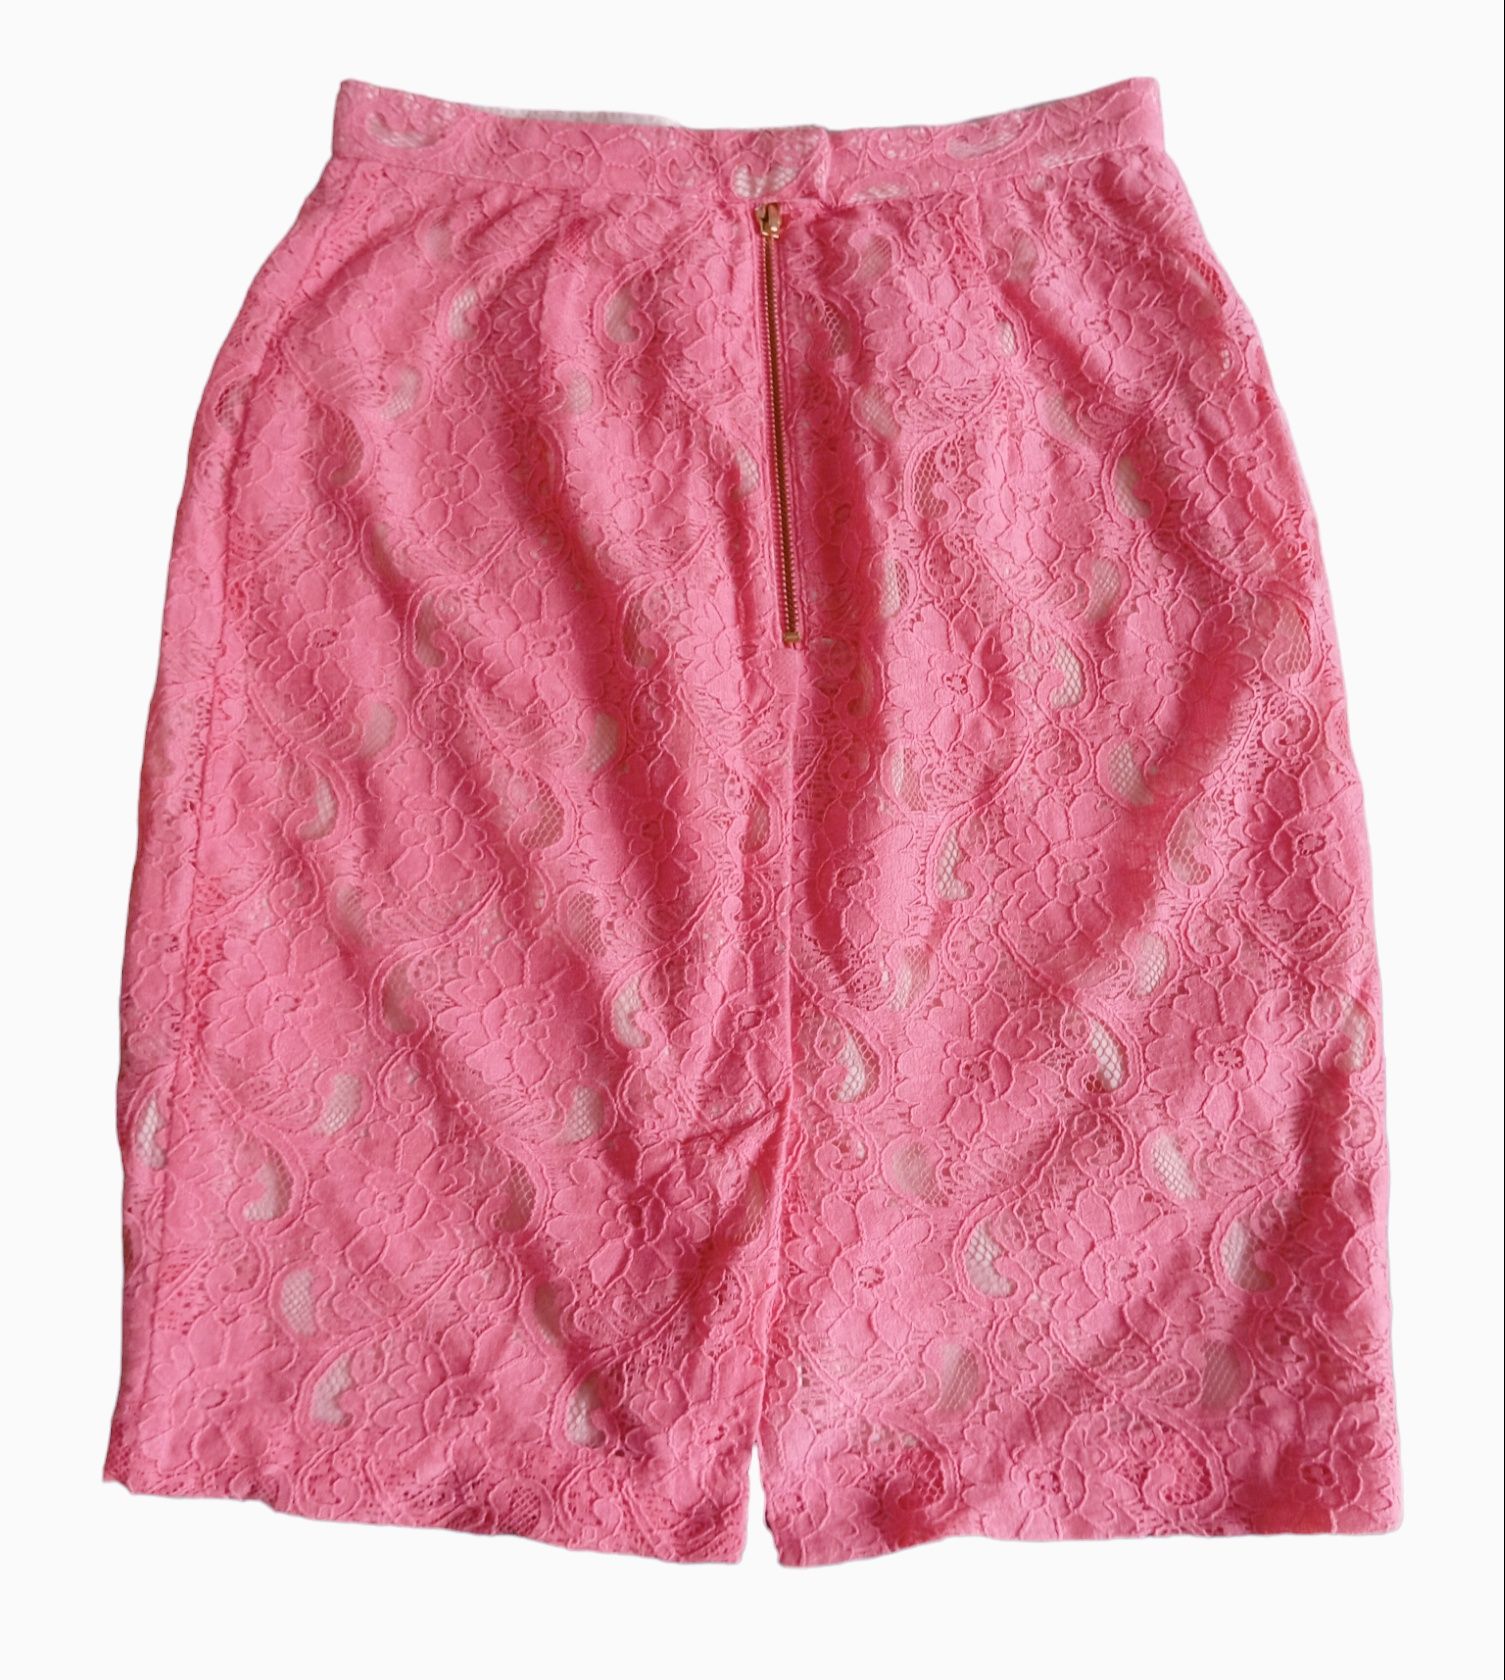 Spódnica+sweterek z guzikami komplet różowy rozmiar XS S